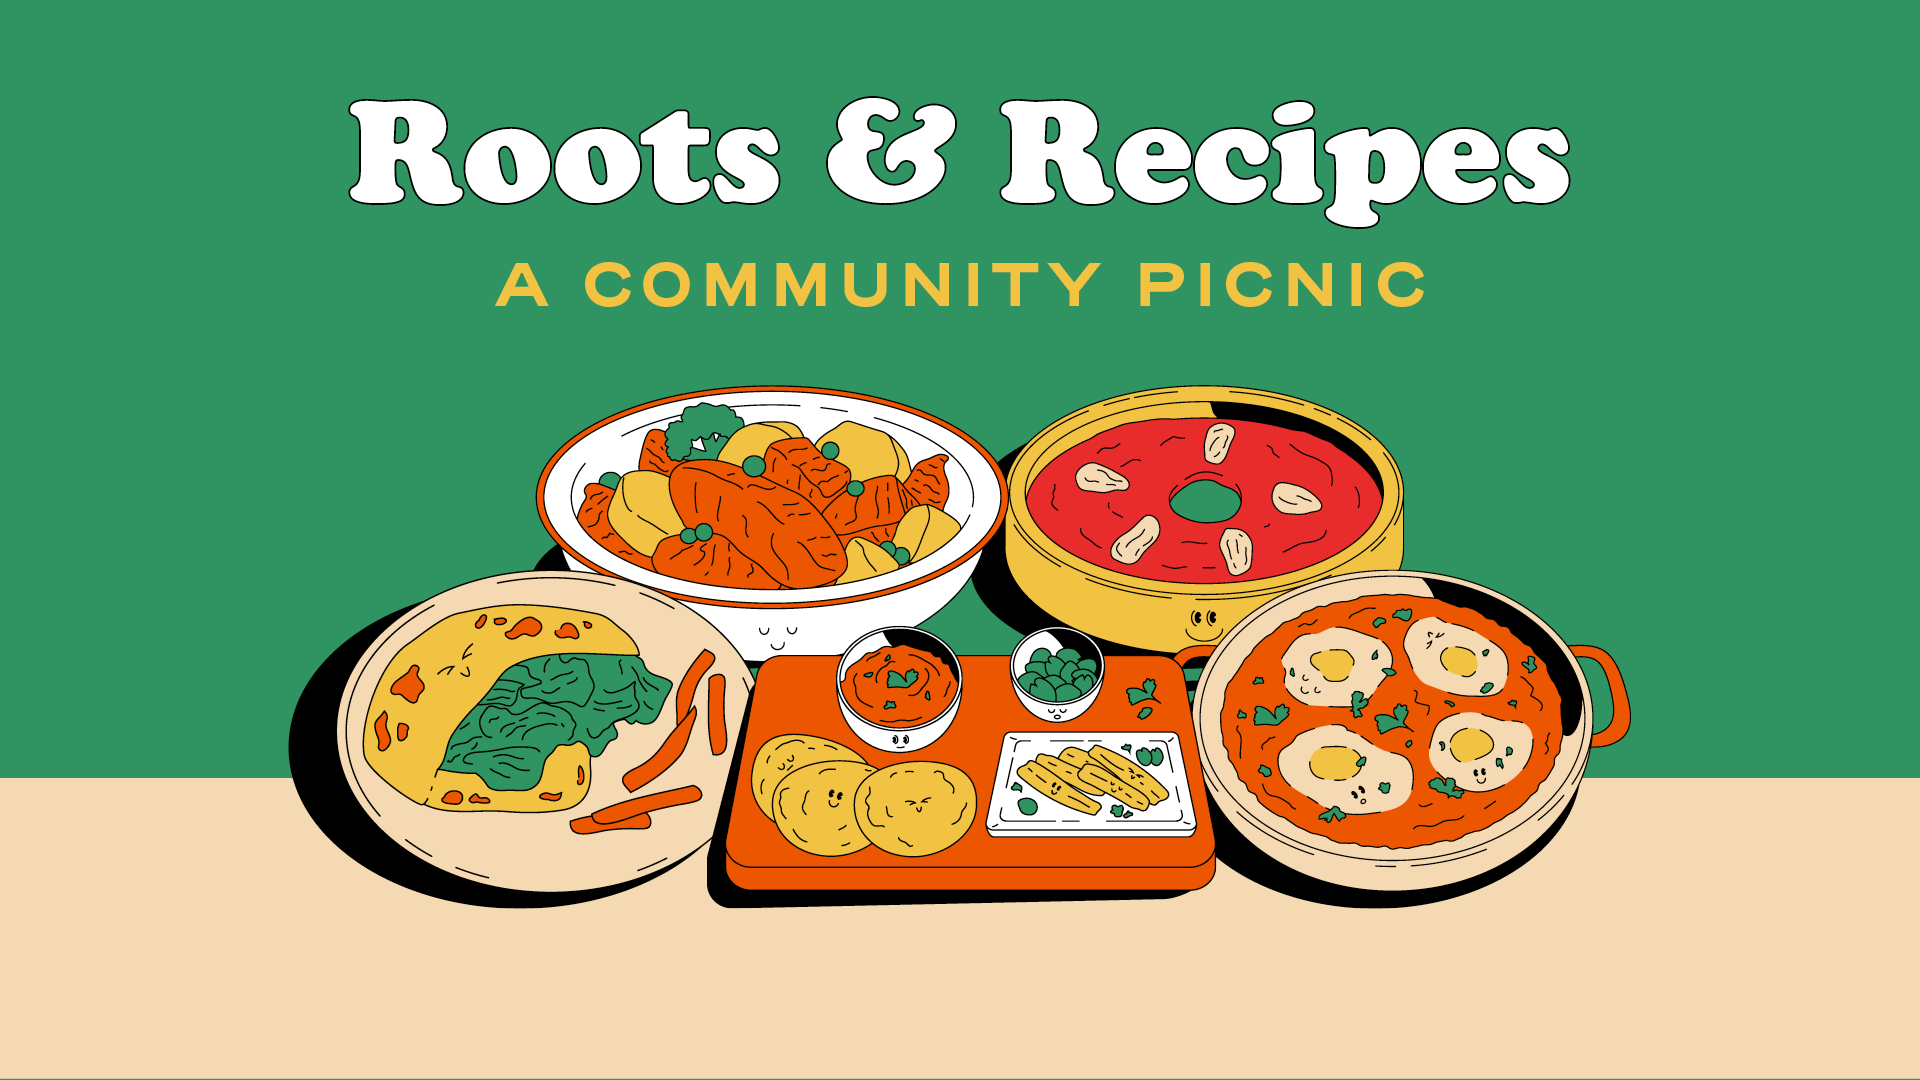 Roots & Recipes: A Community Picnic